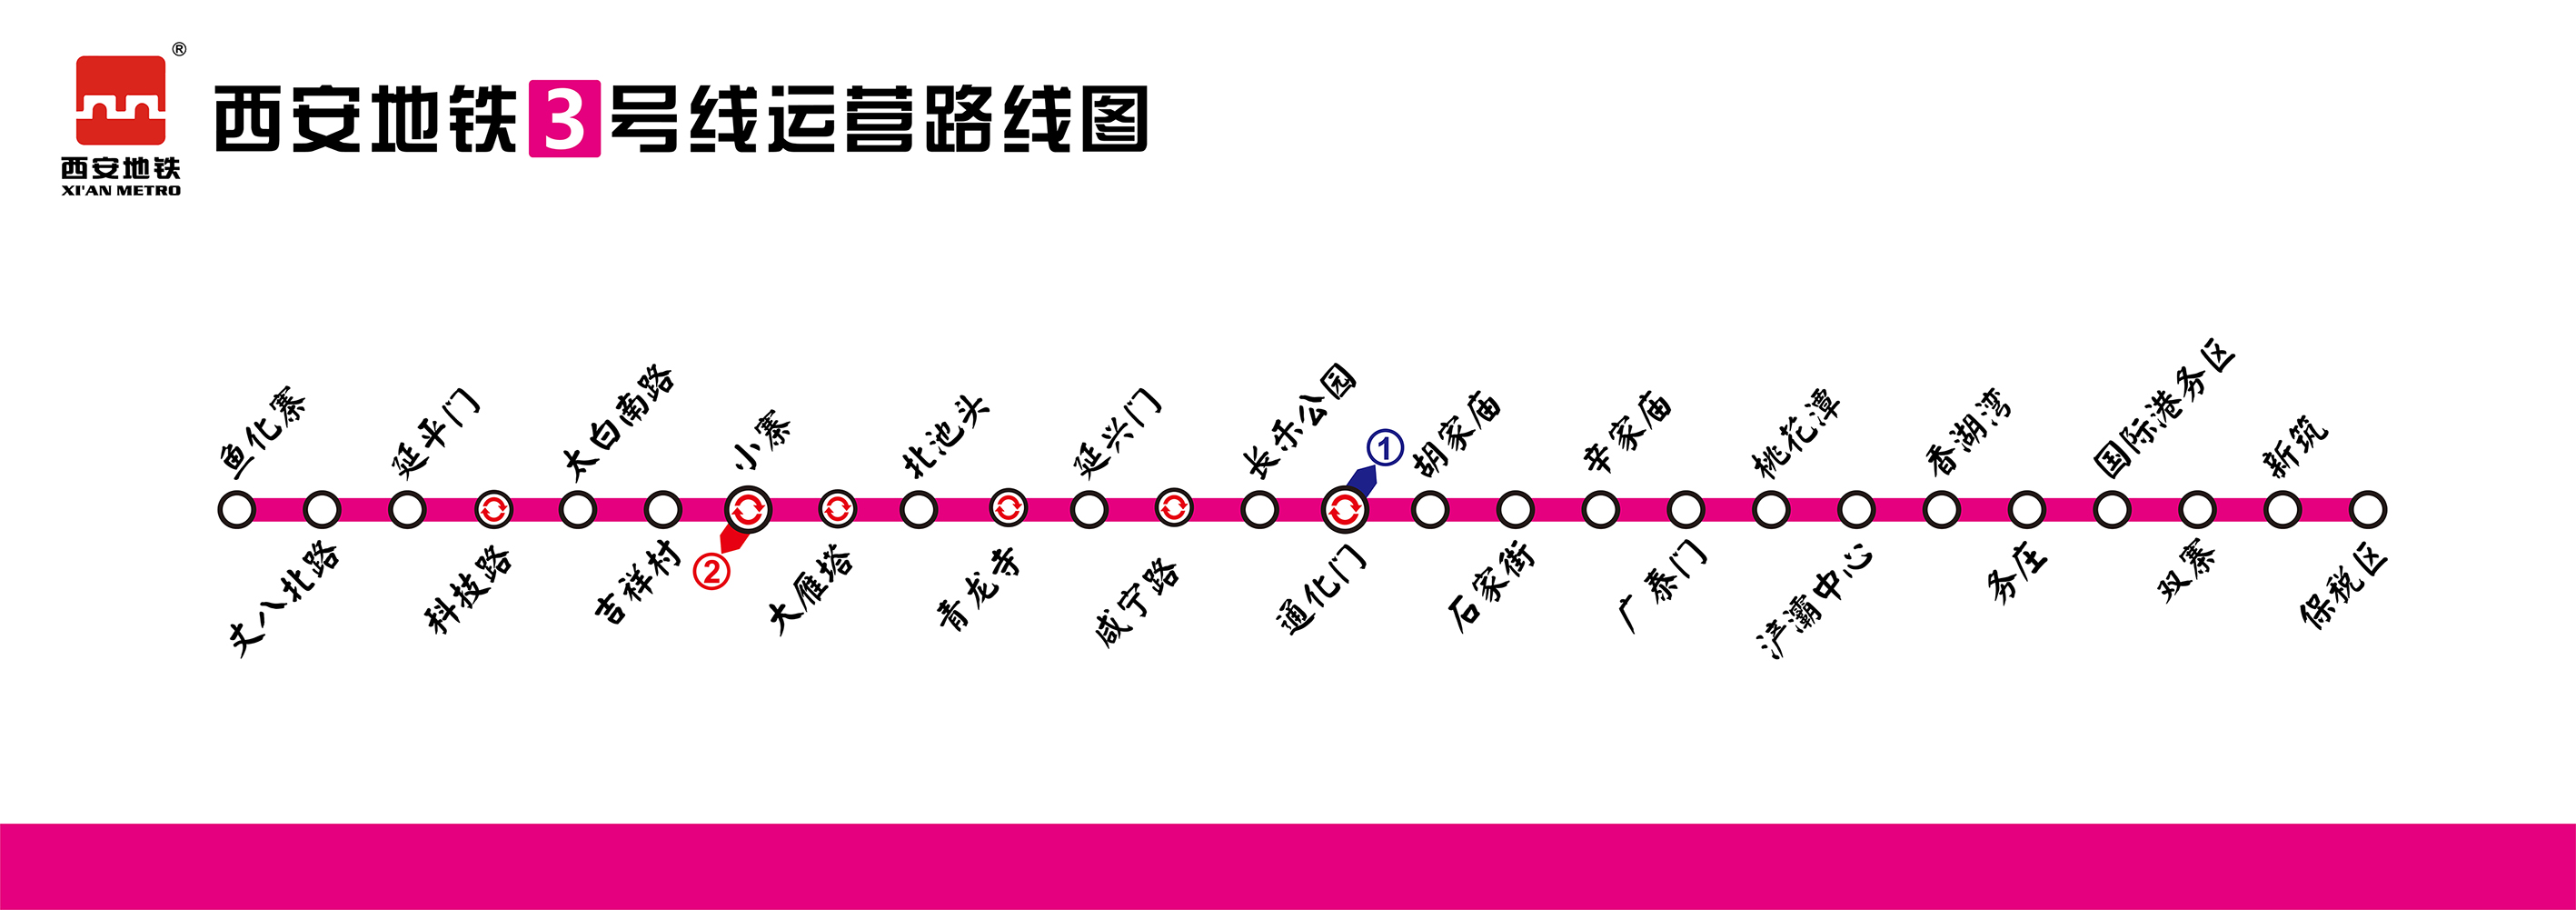 西安捷運3號線(西安捷運三號線)